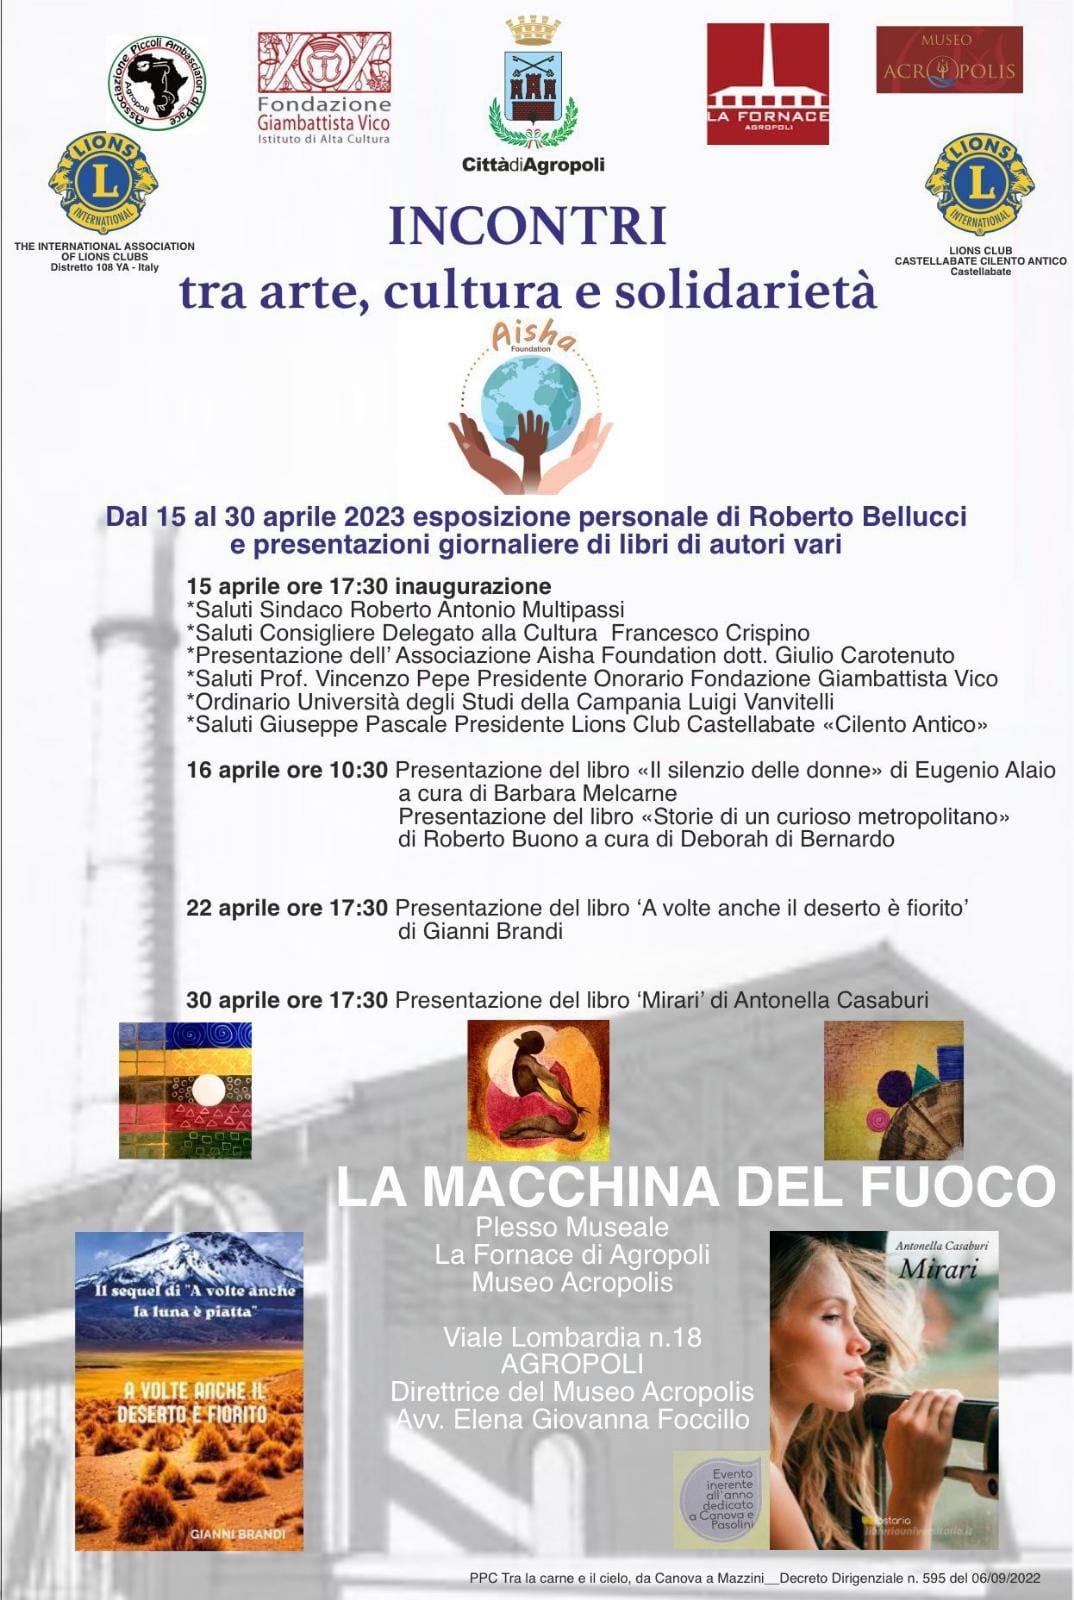 Agropoli: a ‘La Fornace’ incontri tra arte, cultura e solidarietà dal 15 al 30 aprile